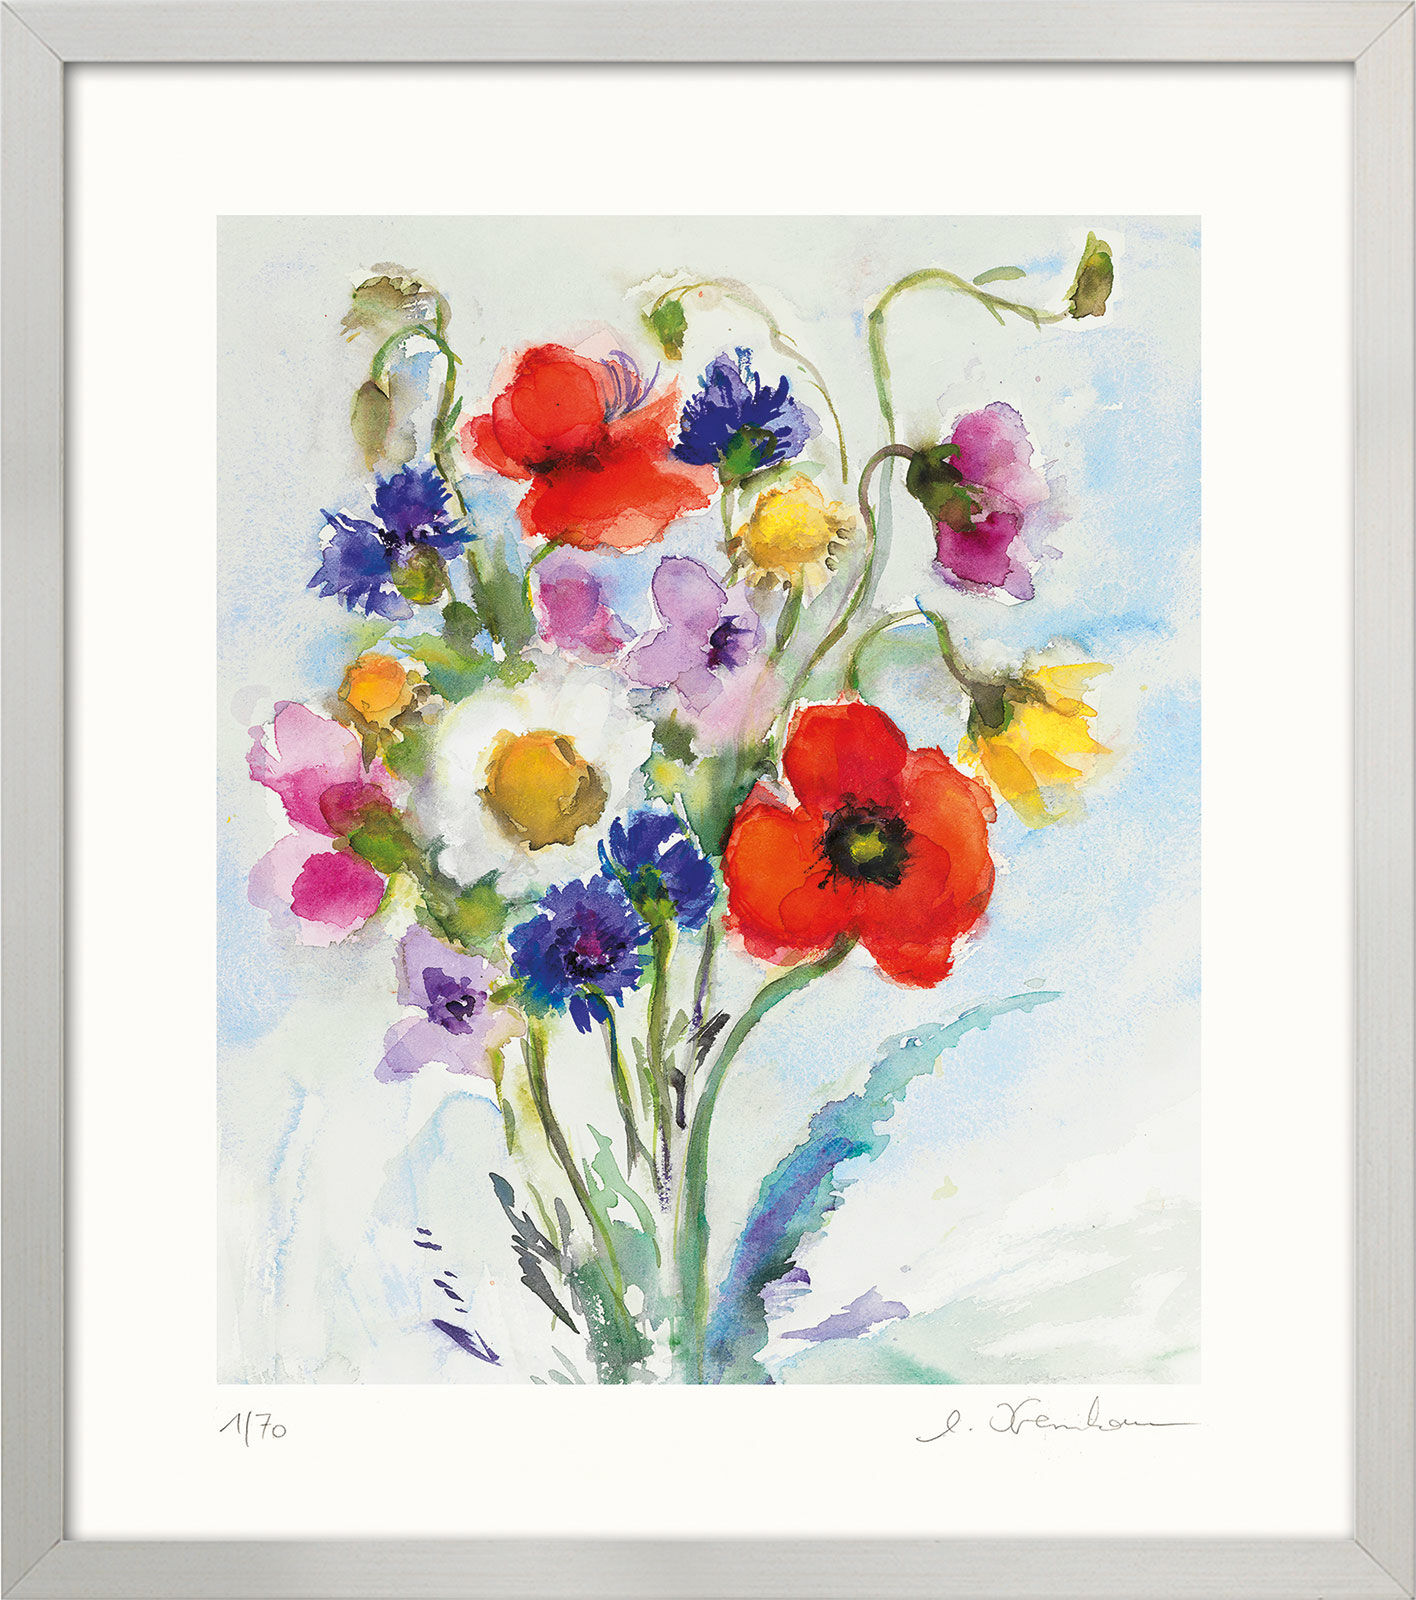 Beeld "Wilde bloemen" (2017), ingelijst von Christine Kremkau